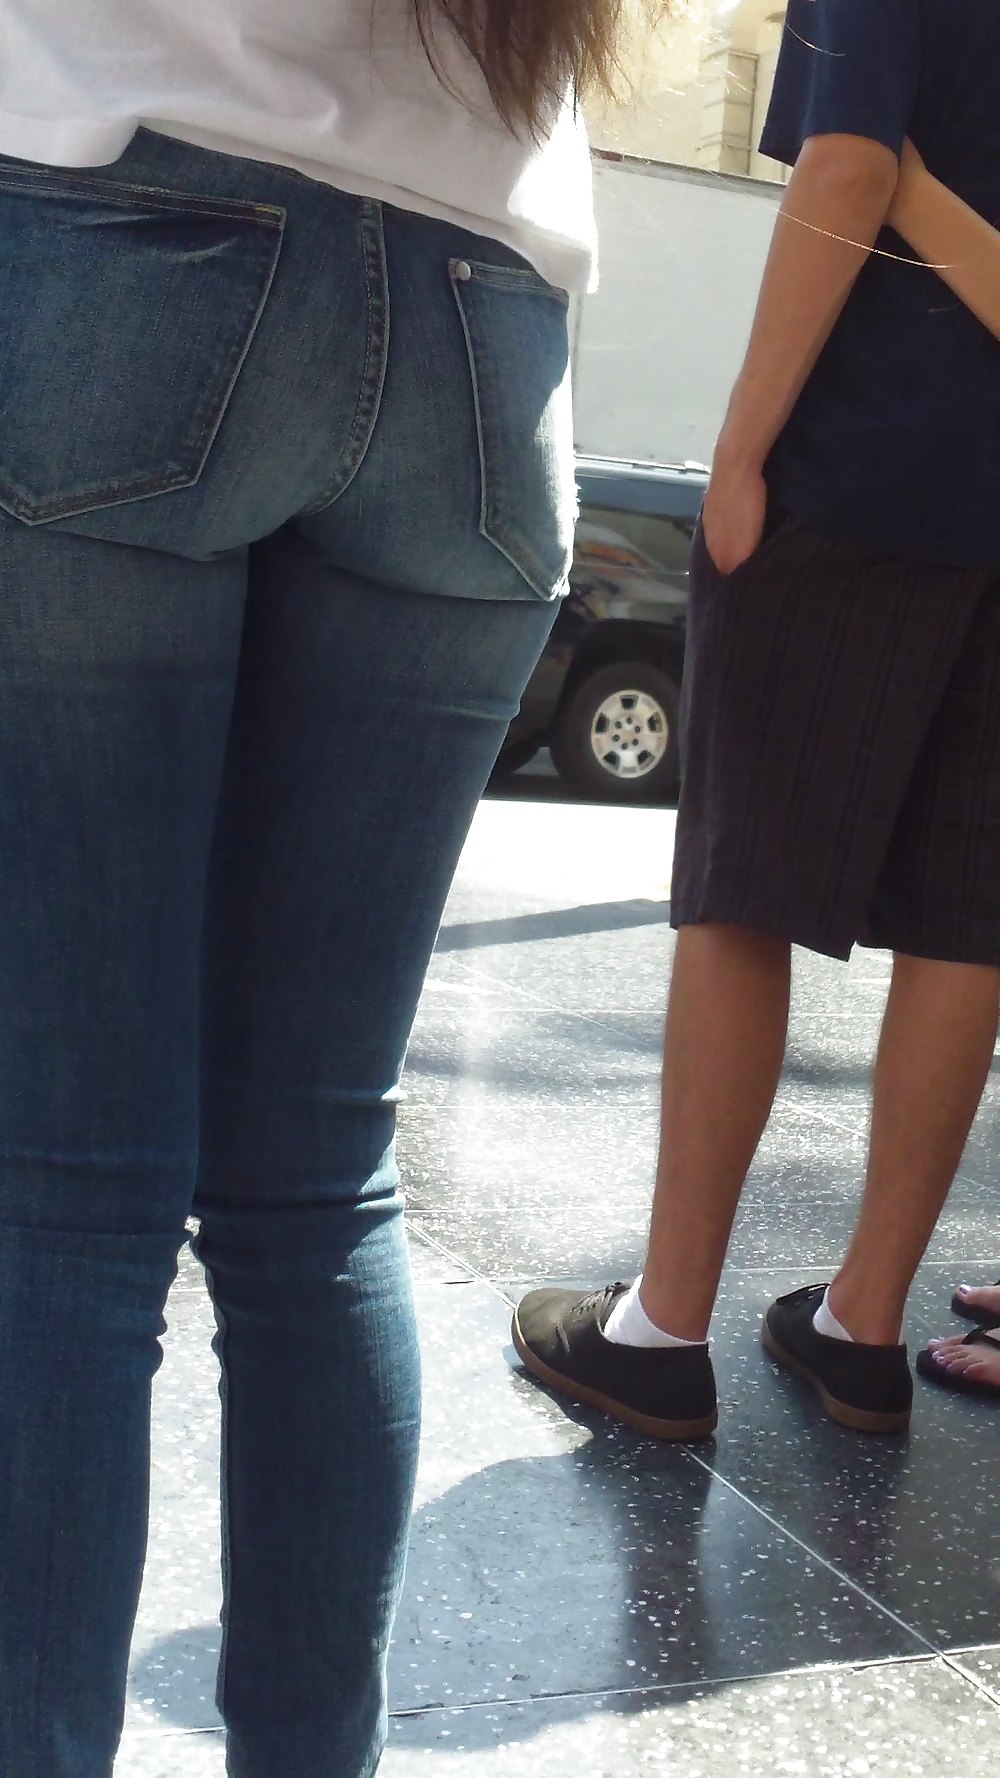 Popular teen girls ass & butt in jeans Part 5 #28735663